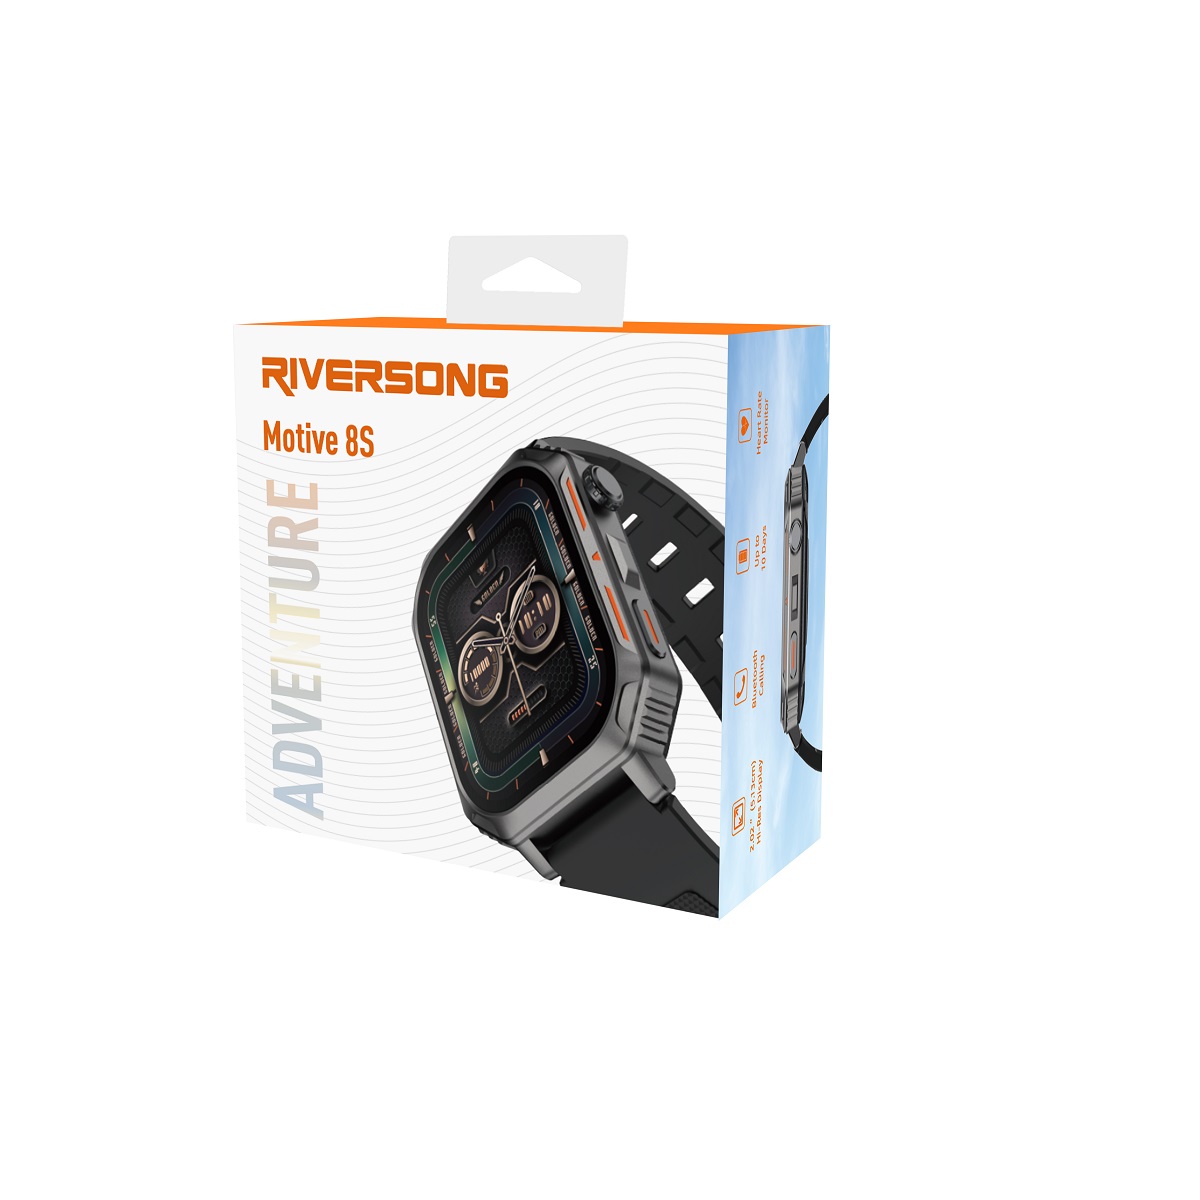 Mski elektroniczny wodoodporny zegarek sportowy kwadratowa koperta smartwatch Riversong Motive 8S szary SW803 / 5